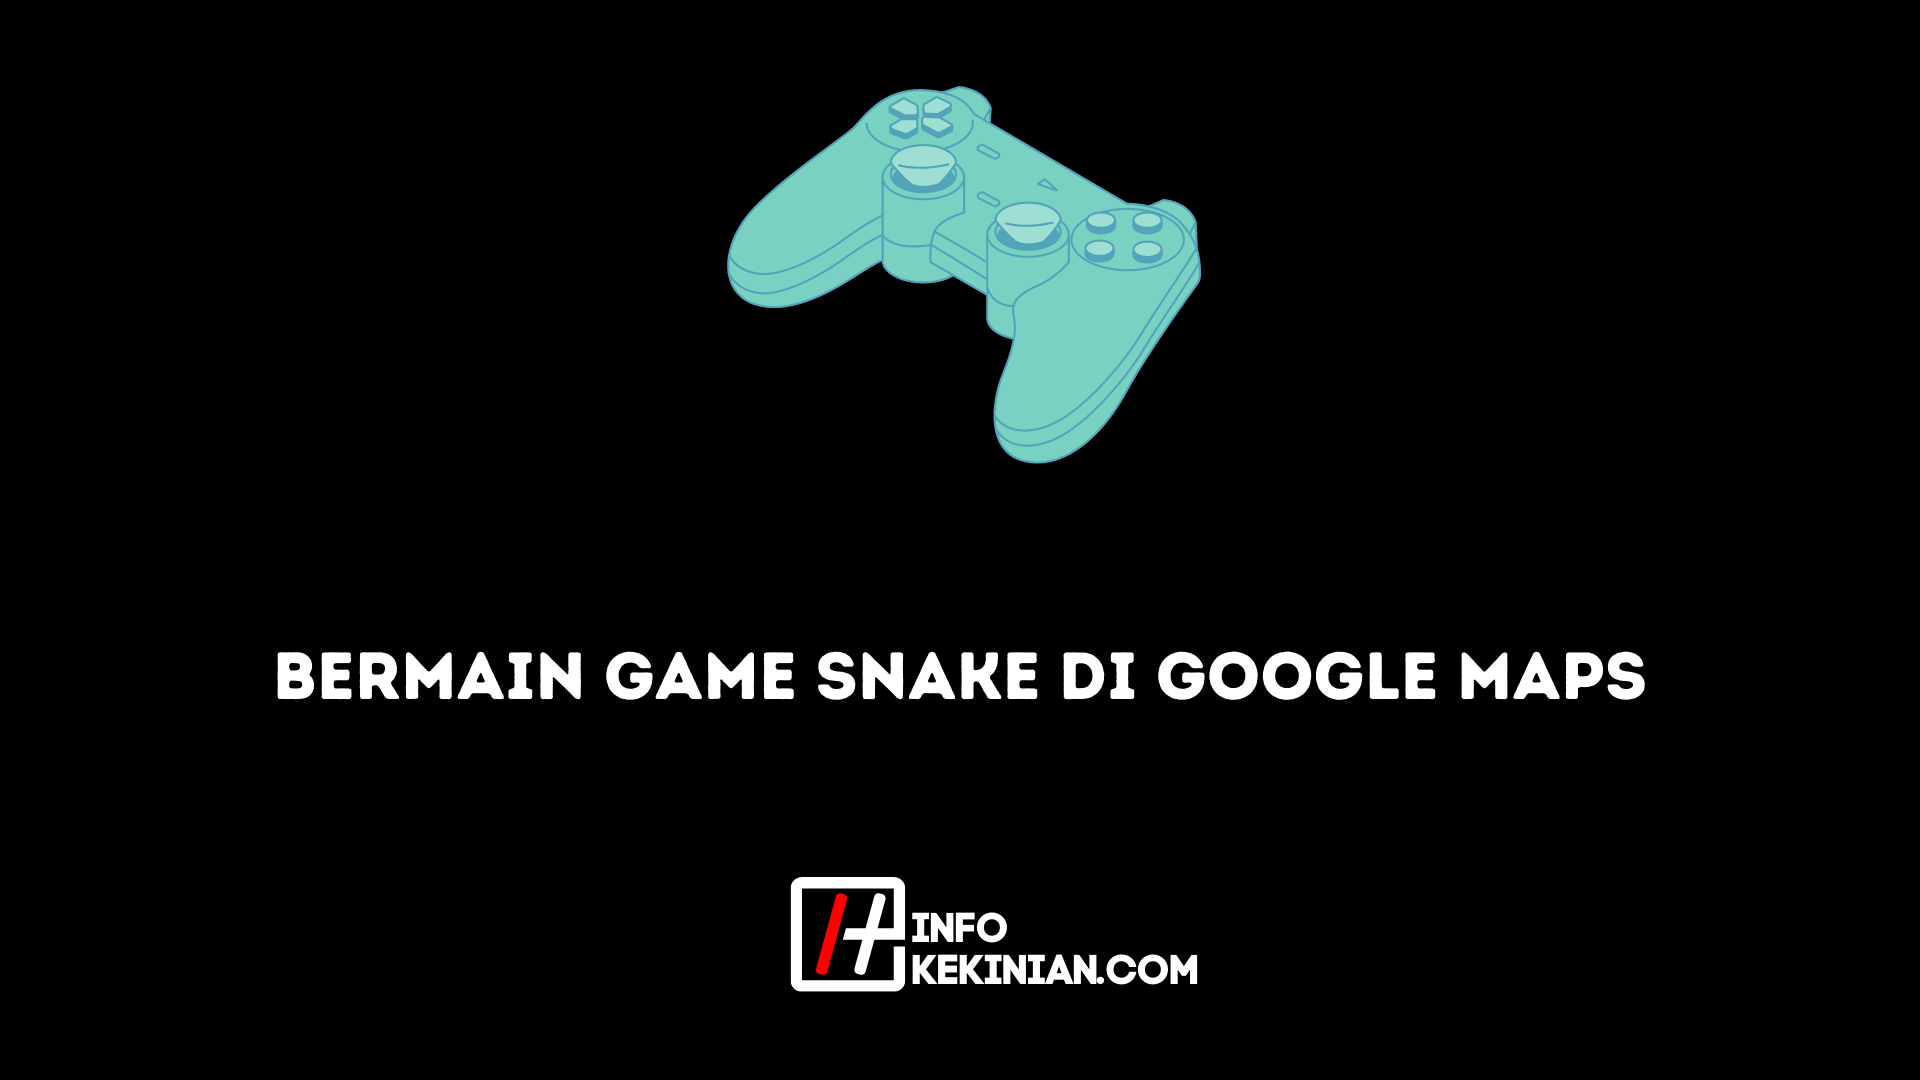 Bermain Game Snake di Google Maps